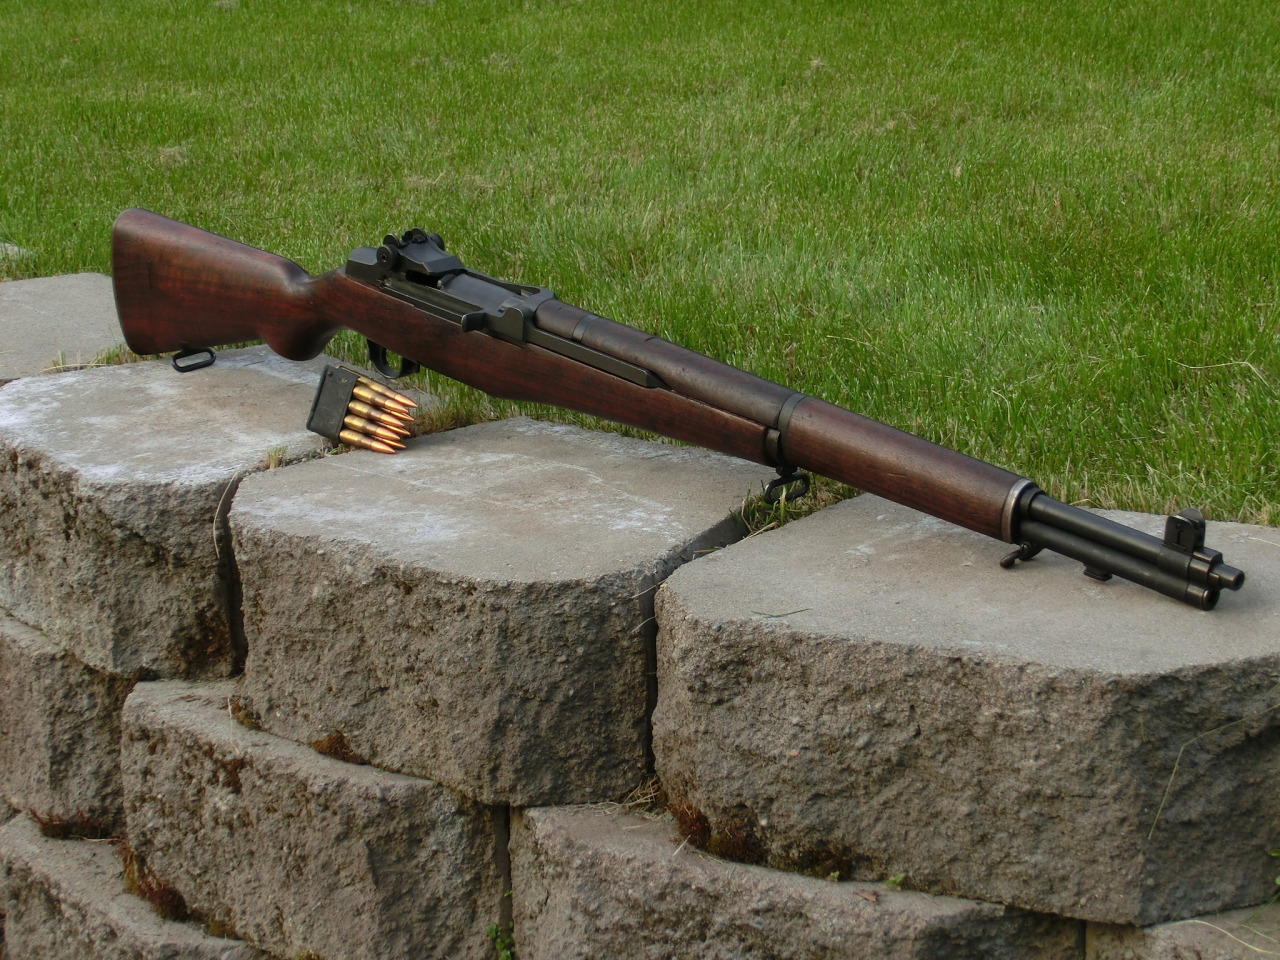 m1式加兰德步枪是枪械历史上第一种大量生产进入现役的半自动(自动